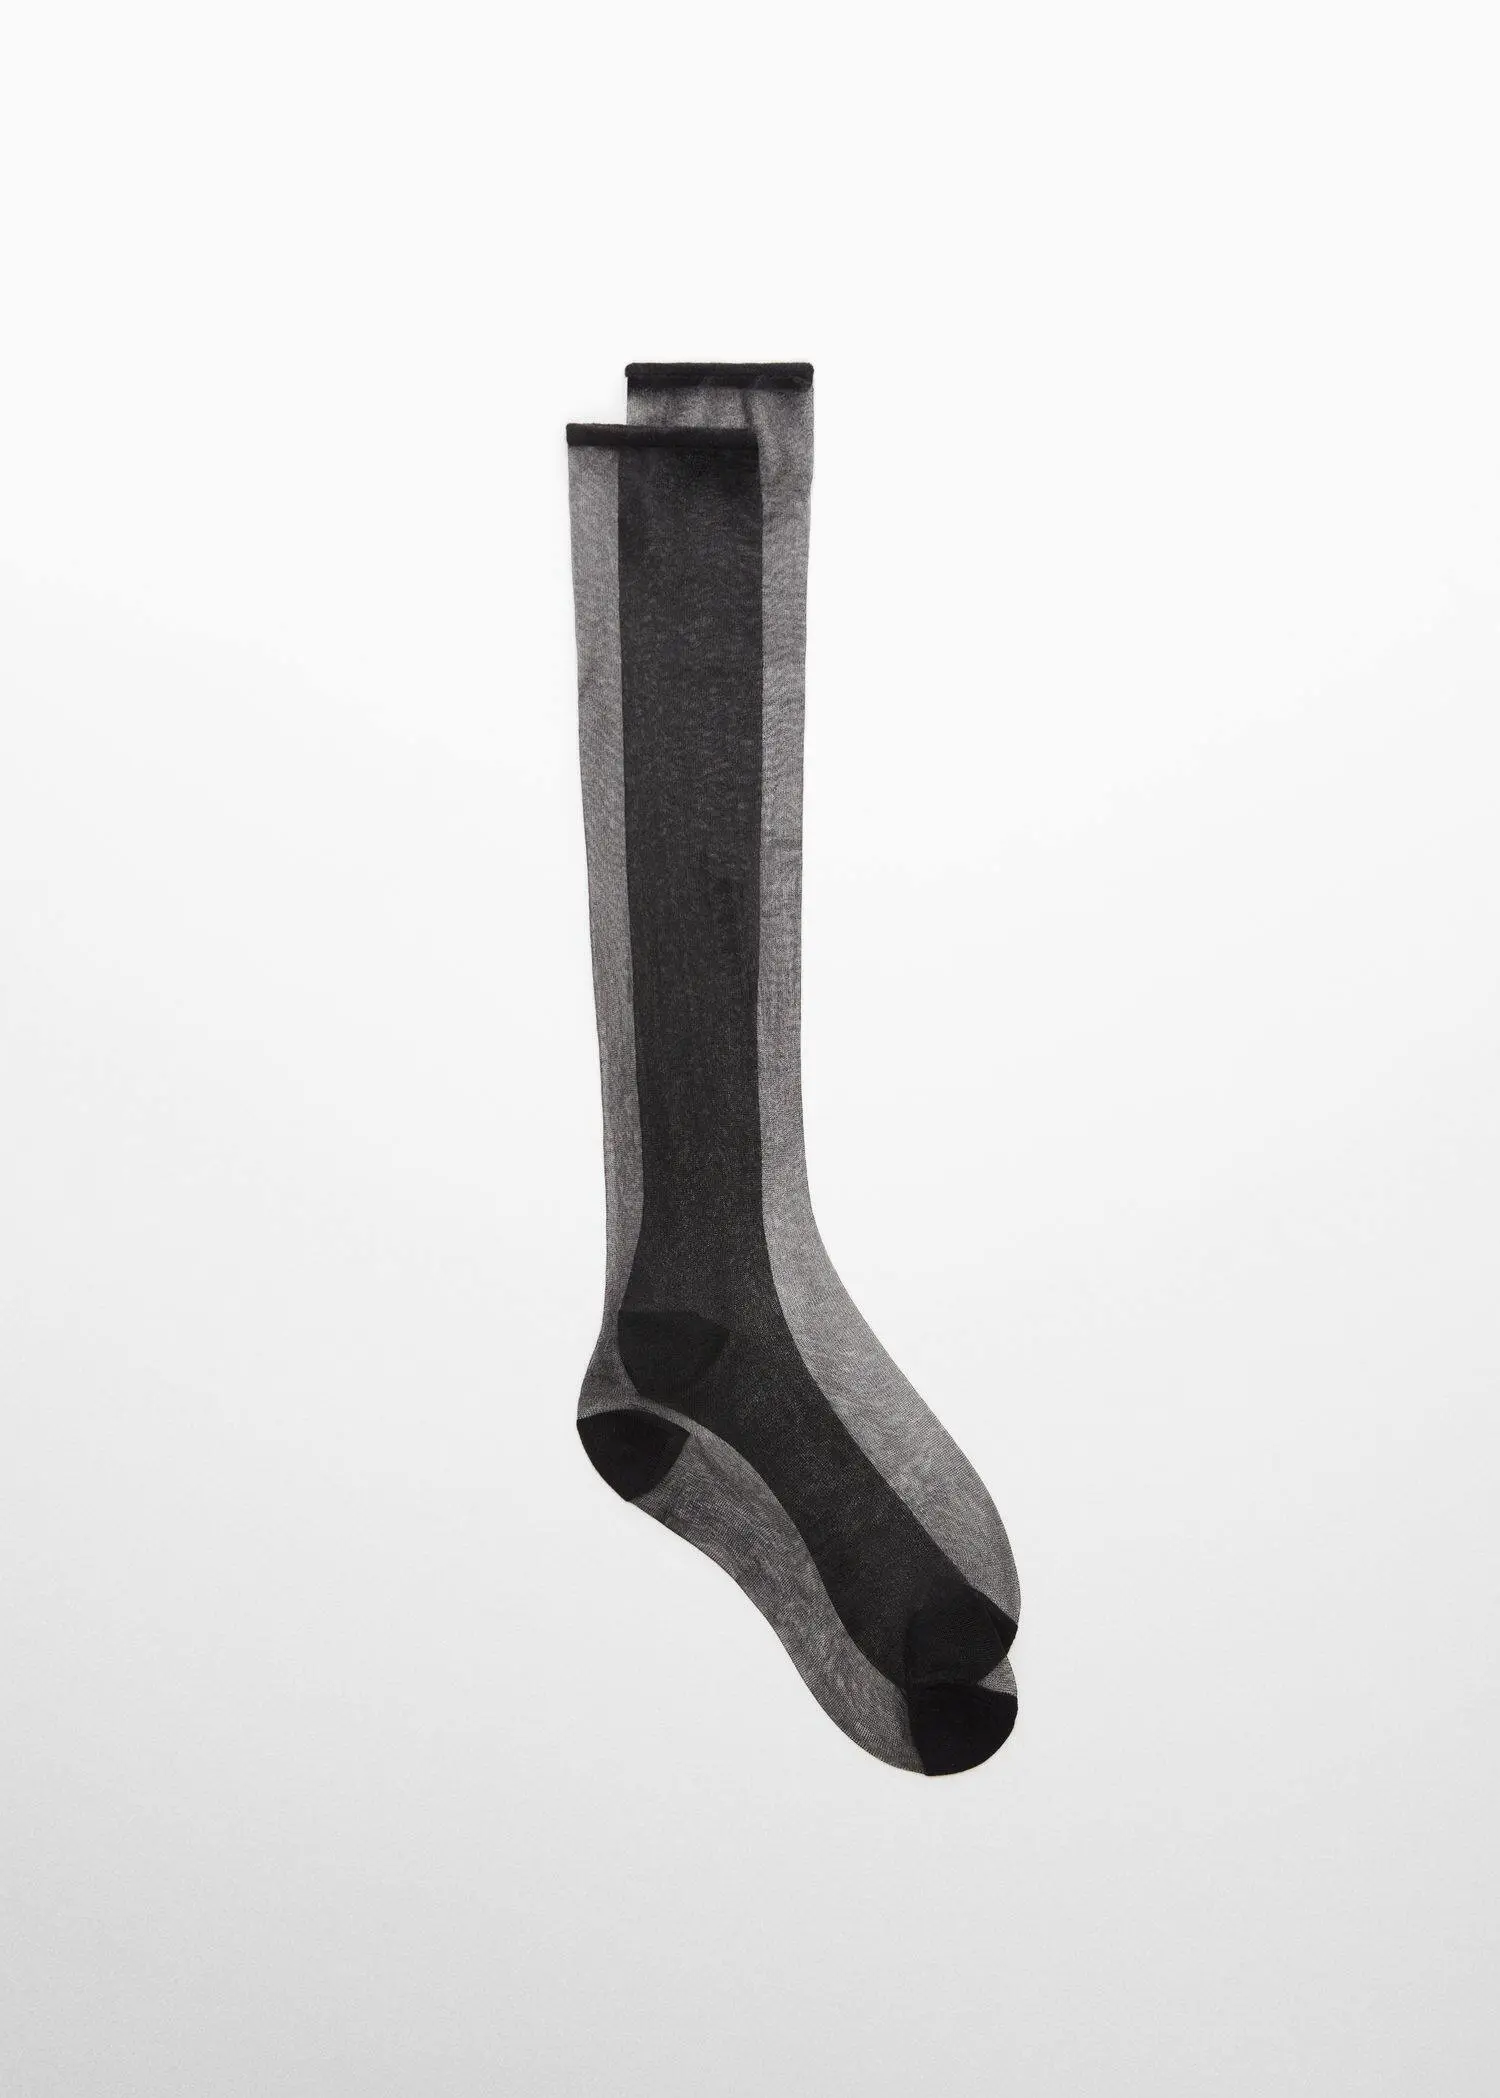 Mango Stocking-type sock. 2